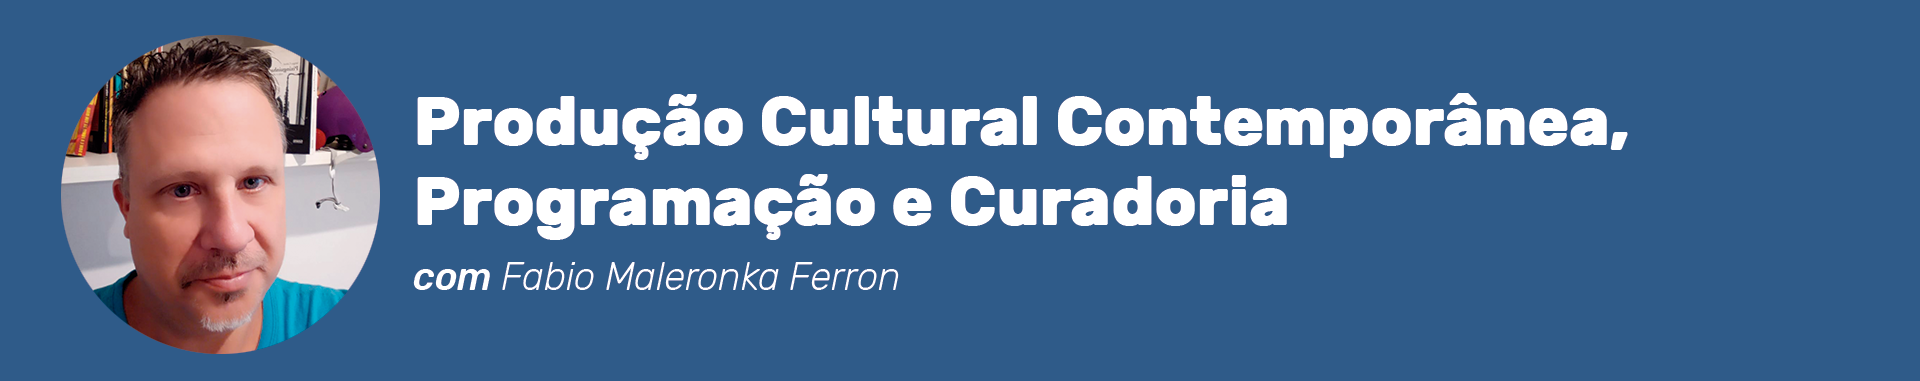 Cabeçalho do curso Produção Cultural Contemporânea, Programação e Curadoria com Fabio Maleronka Ferron